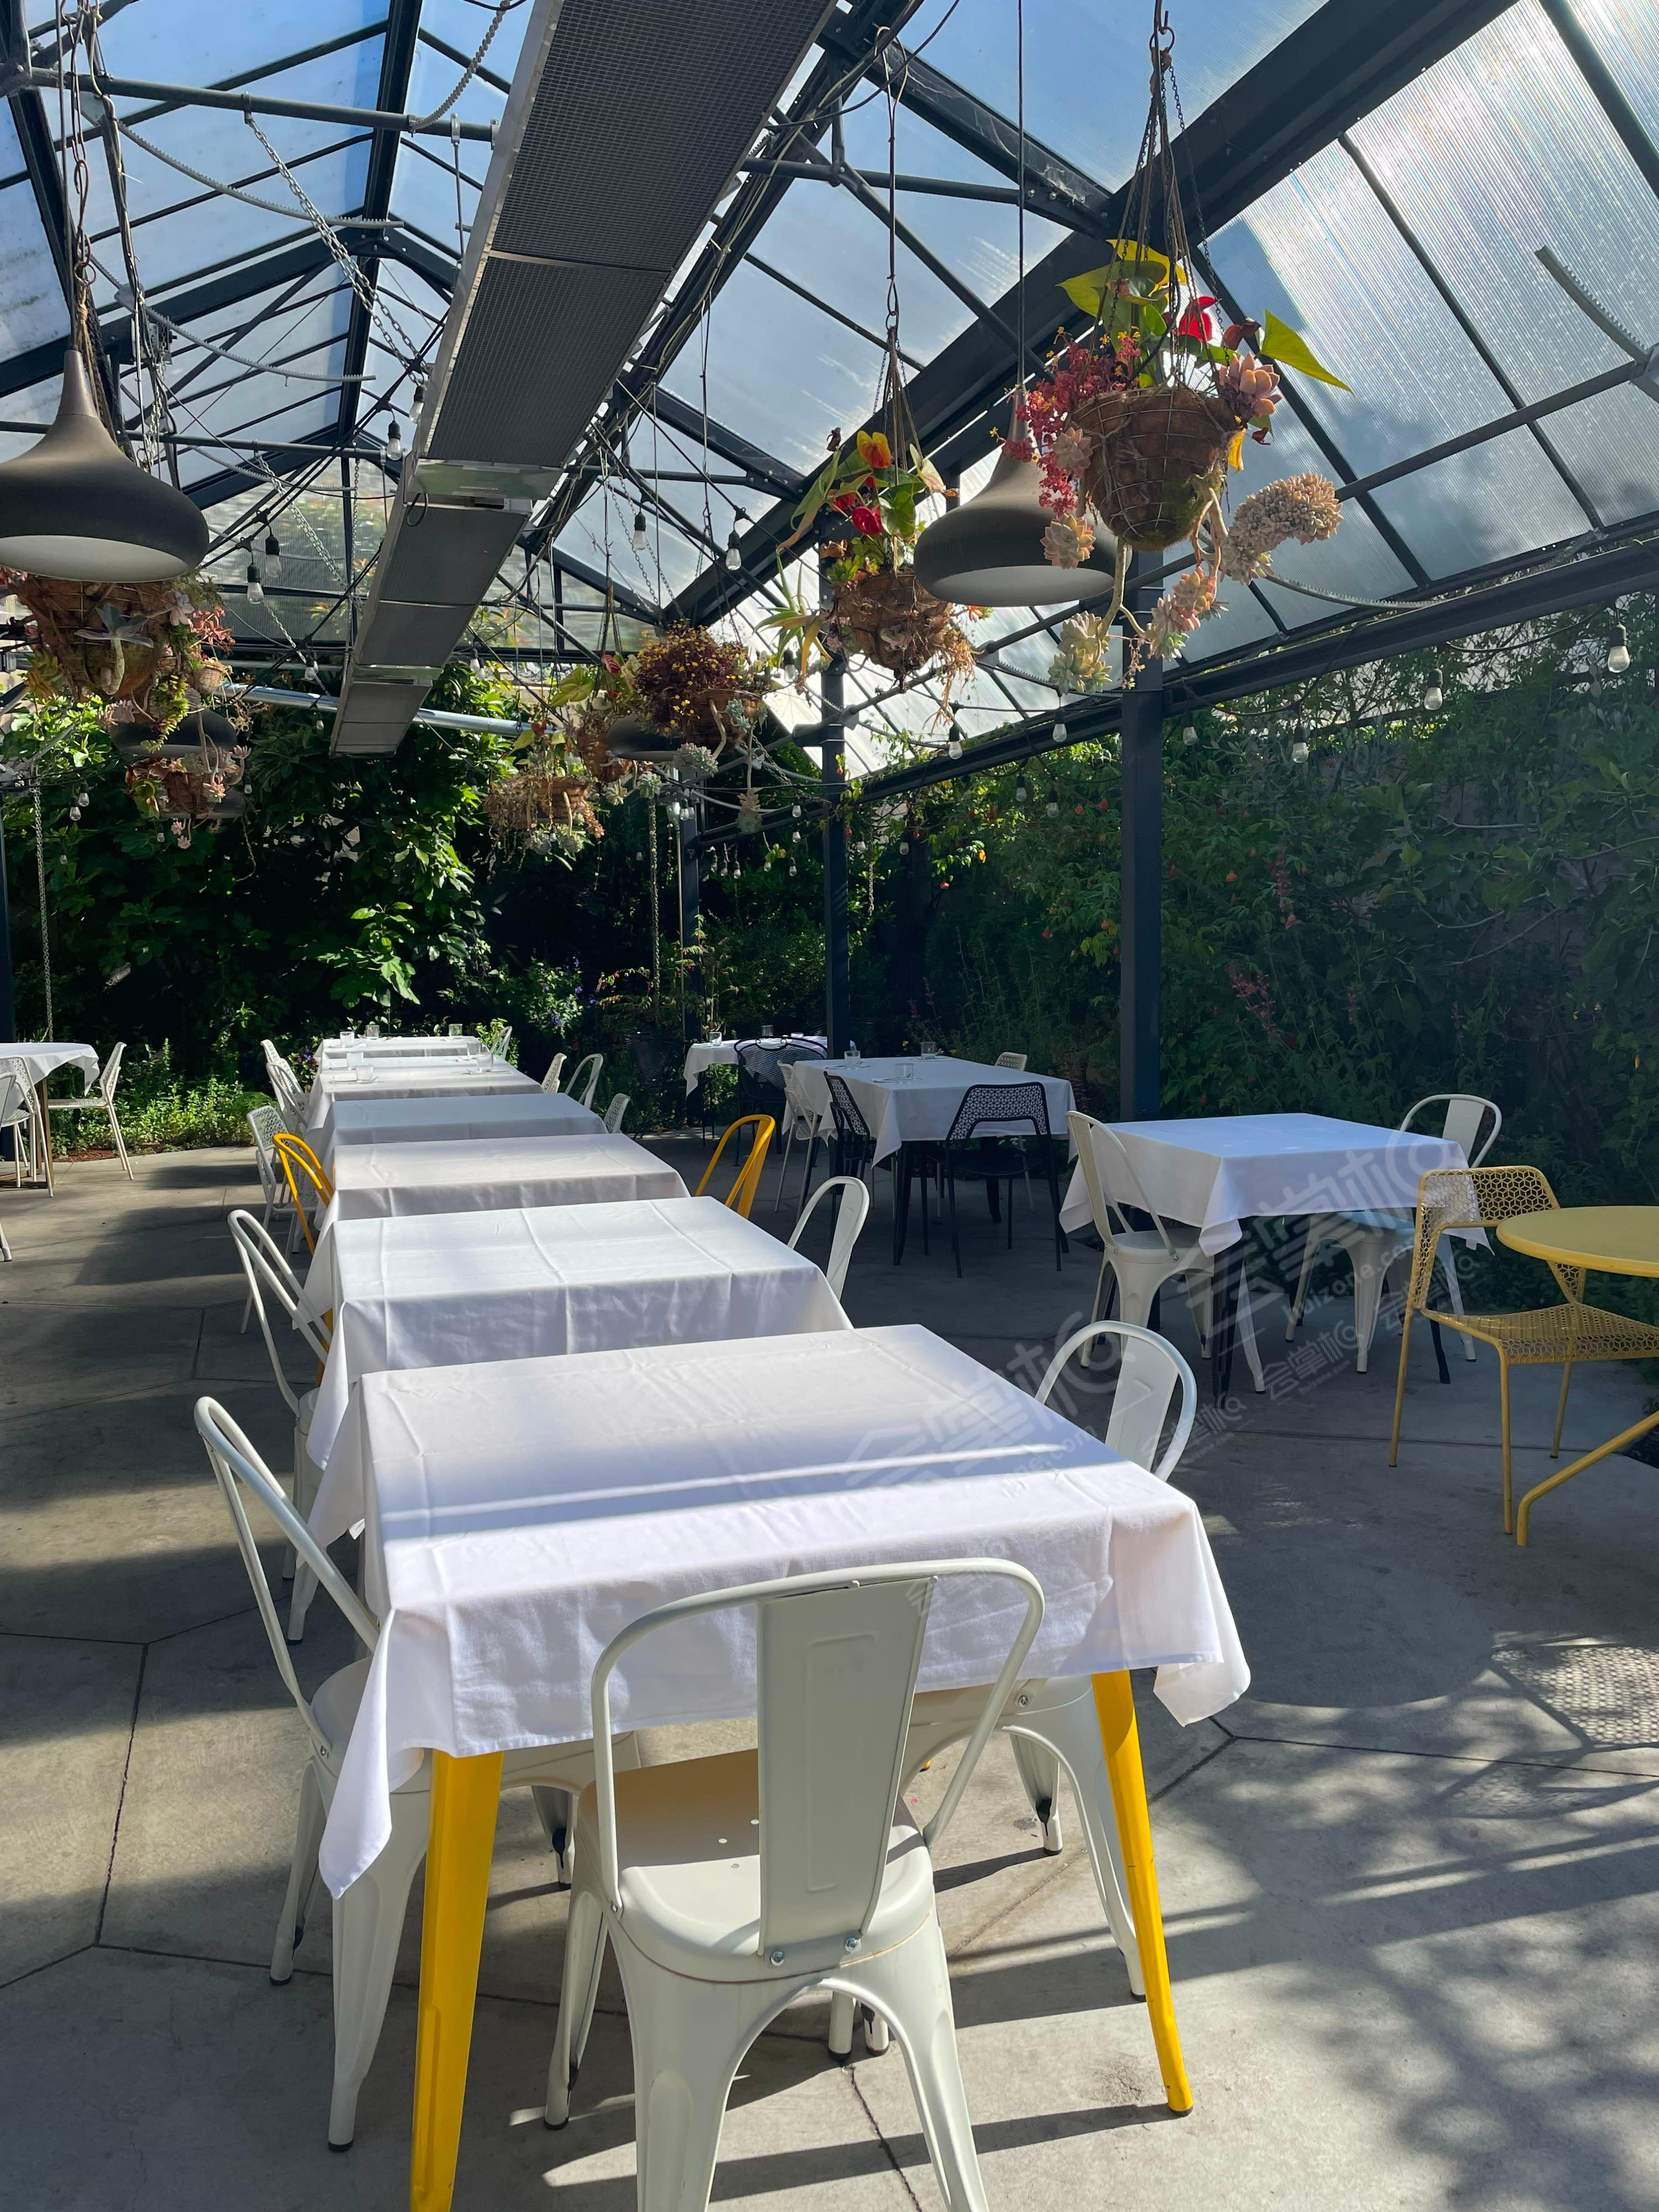 Beautiful Garden Cafe in North Berkeley